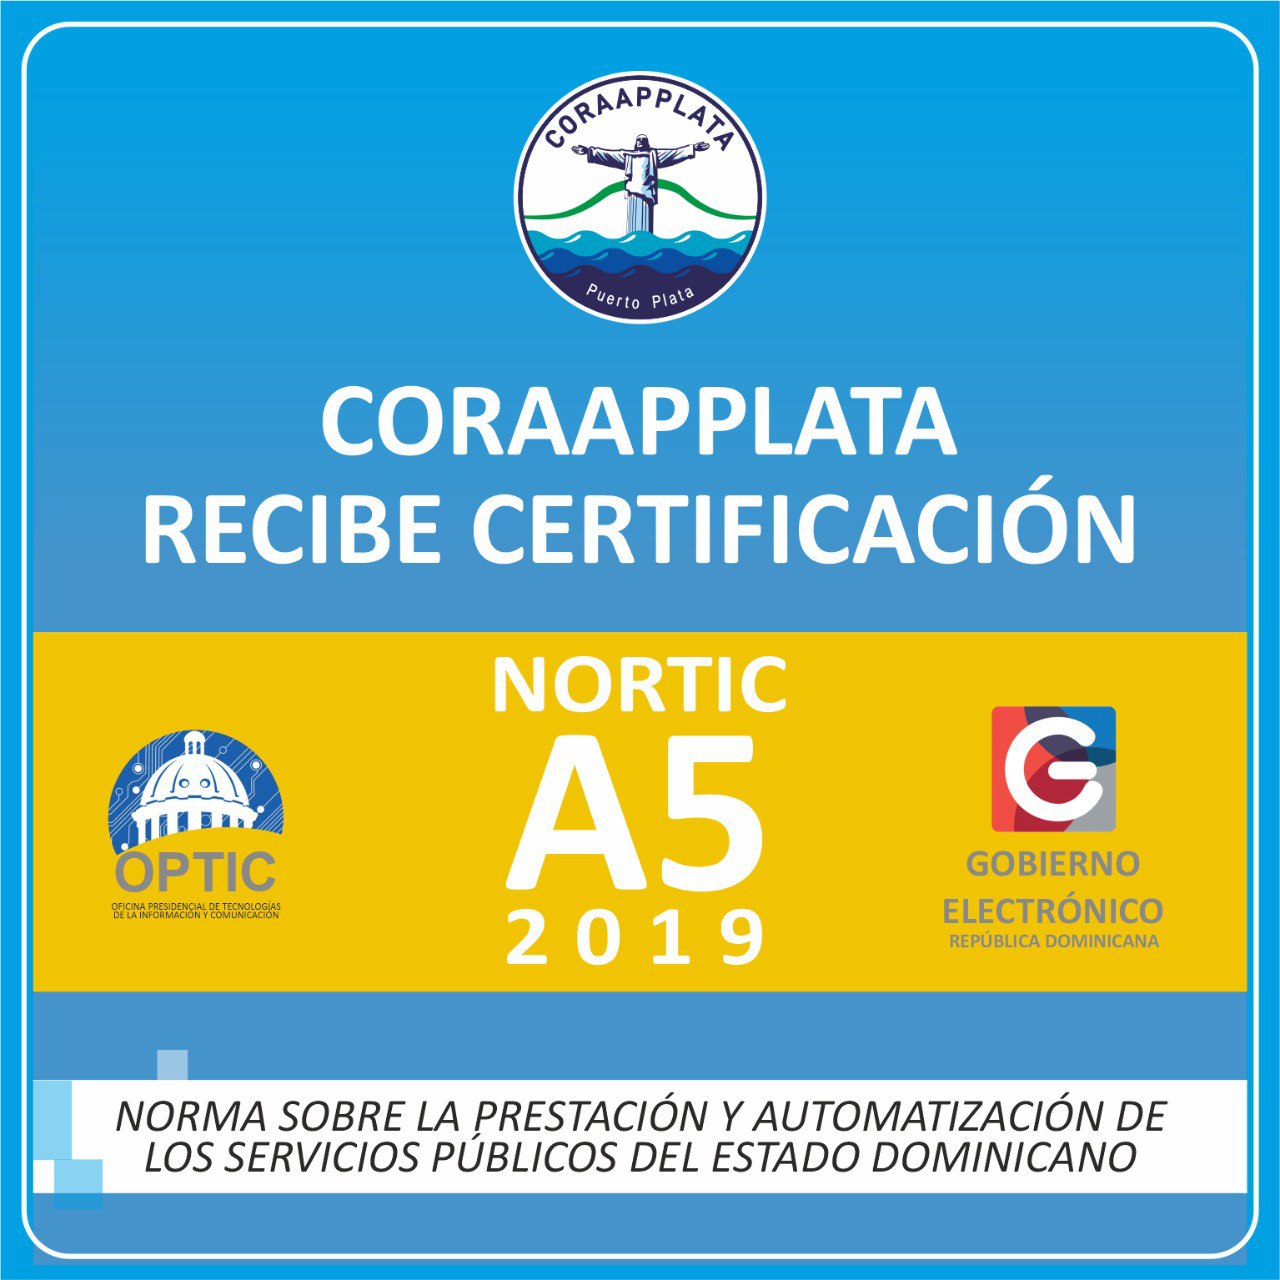 Otorgan a la CORAAPPLATA certificación NORTIC A5:2019 por excelente cumplimiento a requerimientos de servicios 